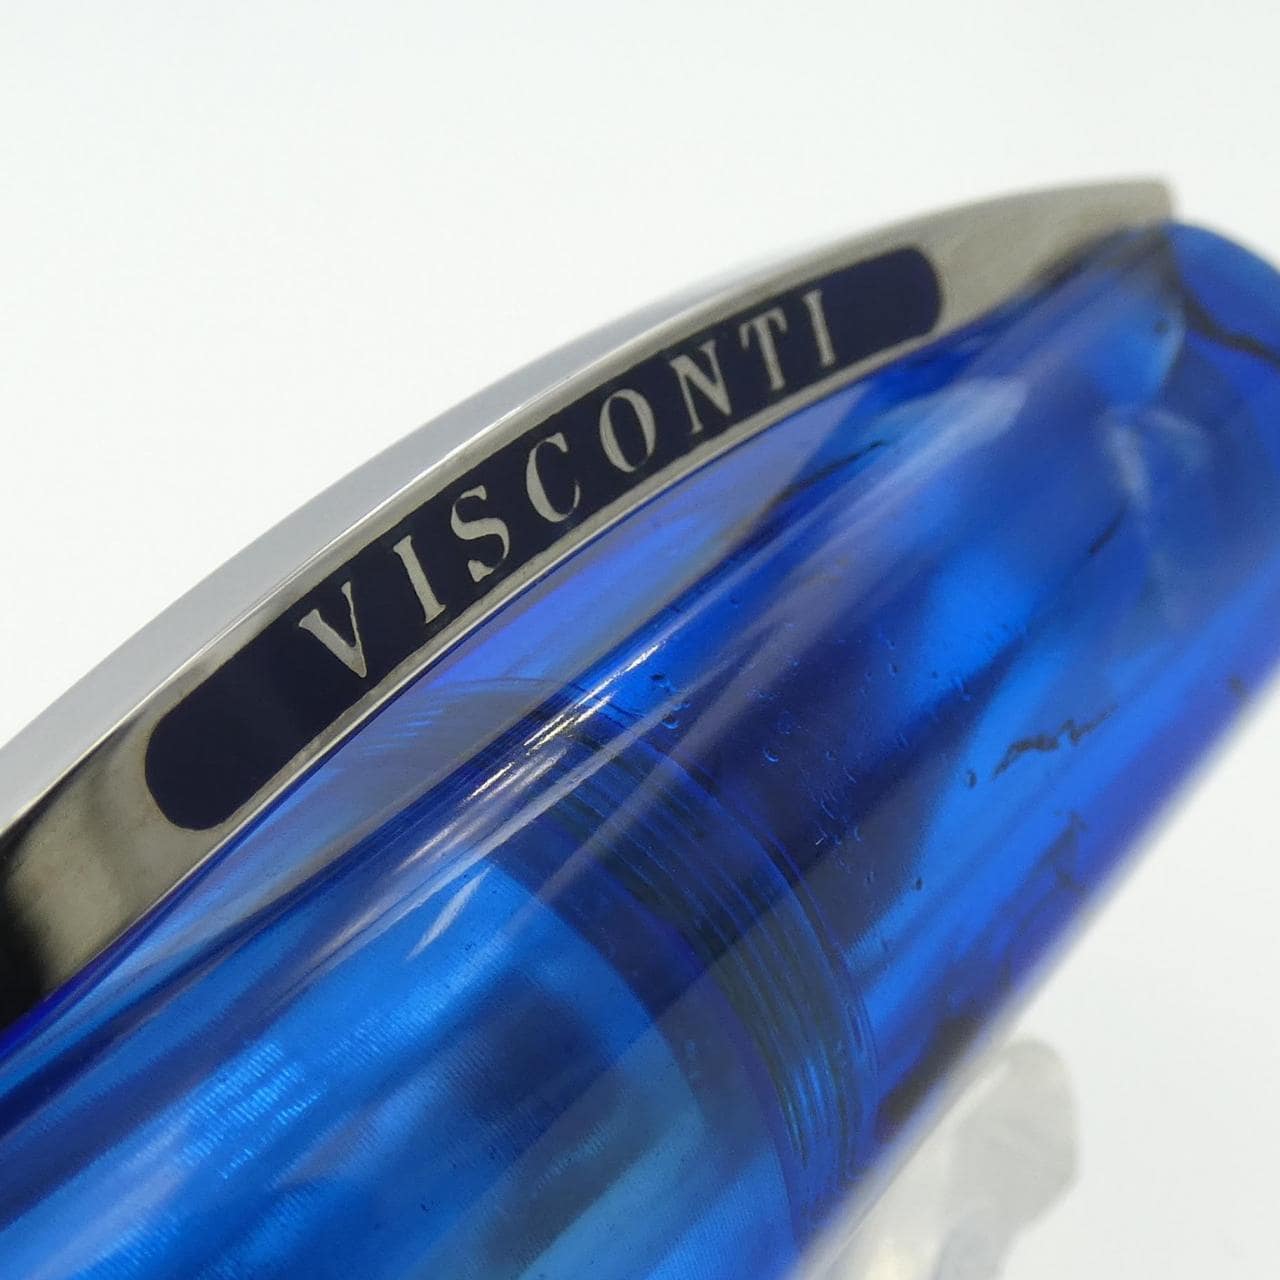 VISCONTI Opera Master Demo Stream Blue Fountain Pen